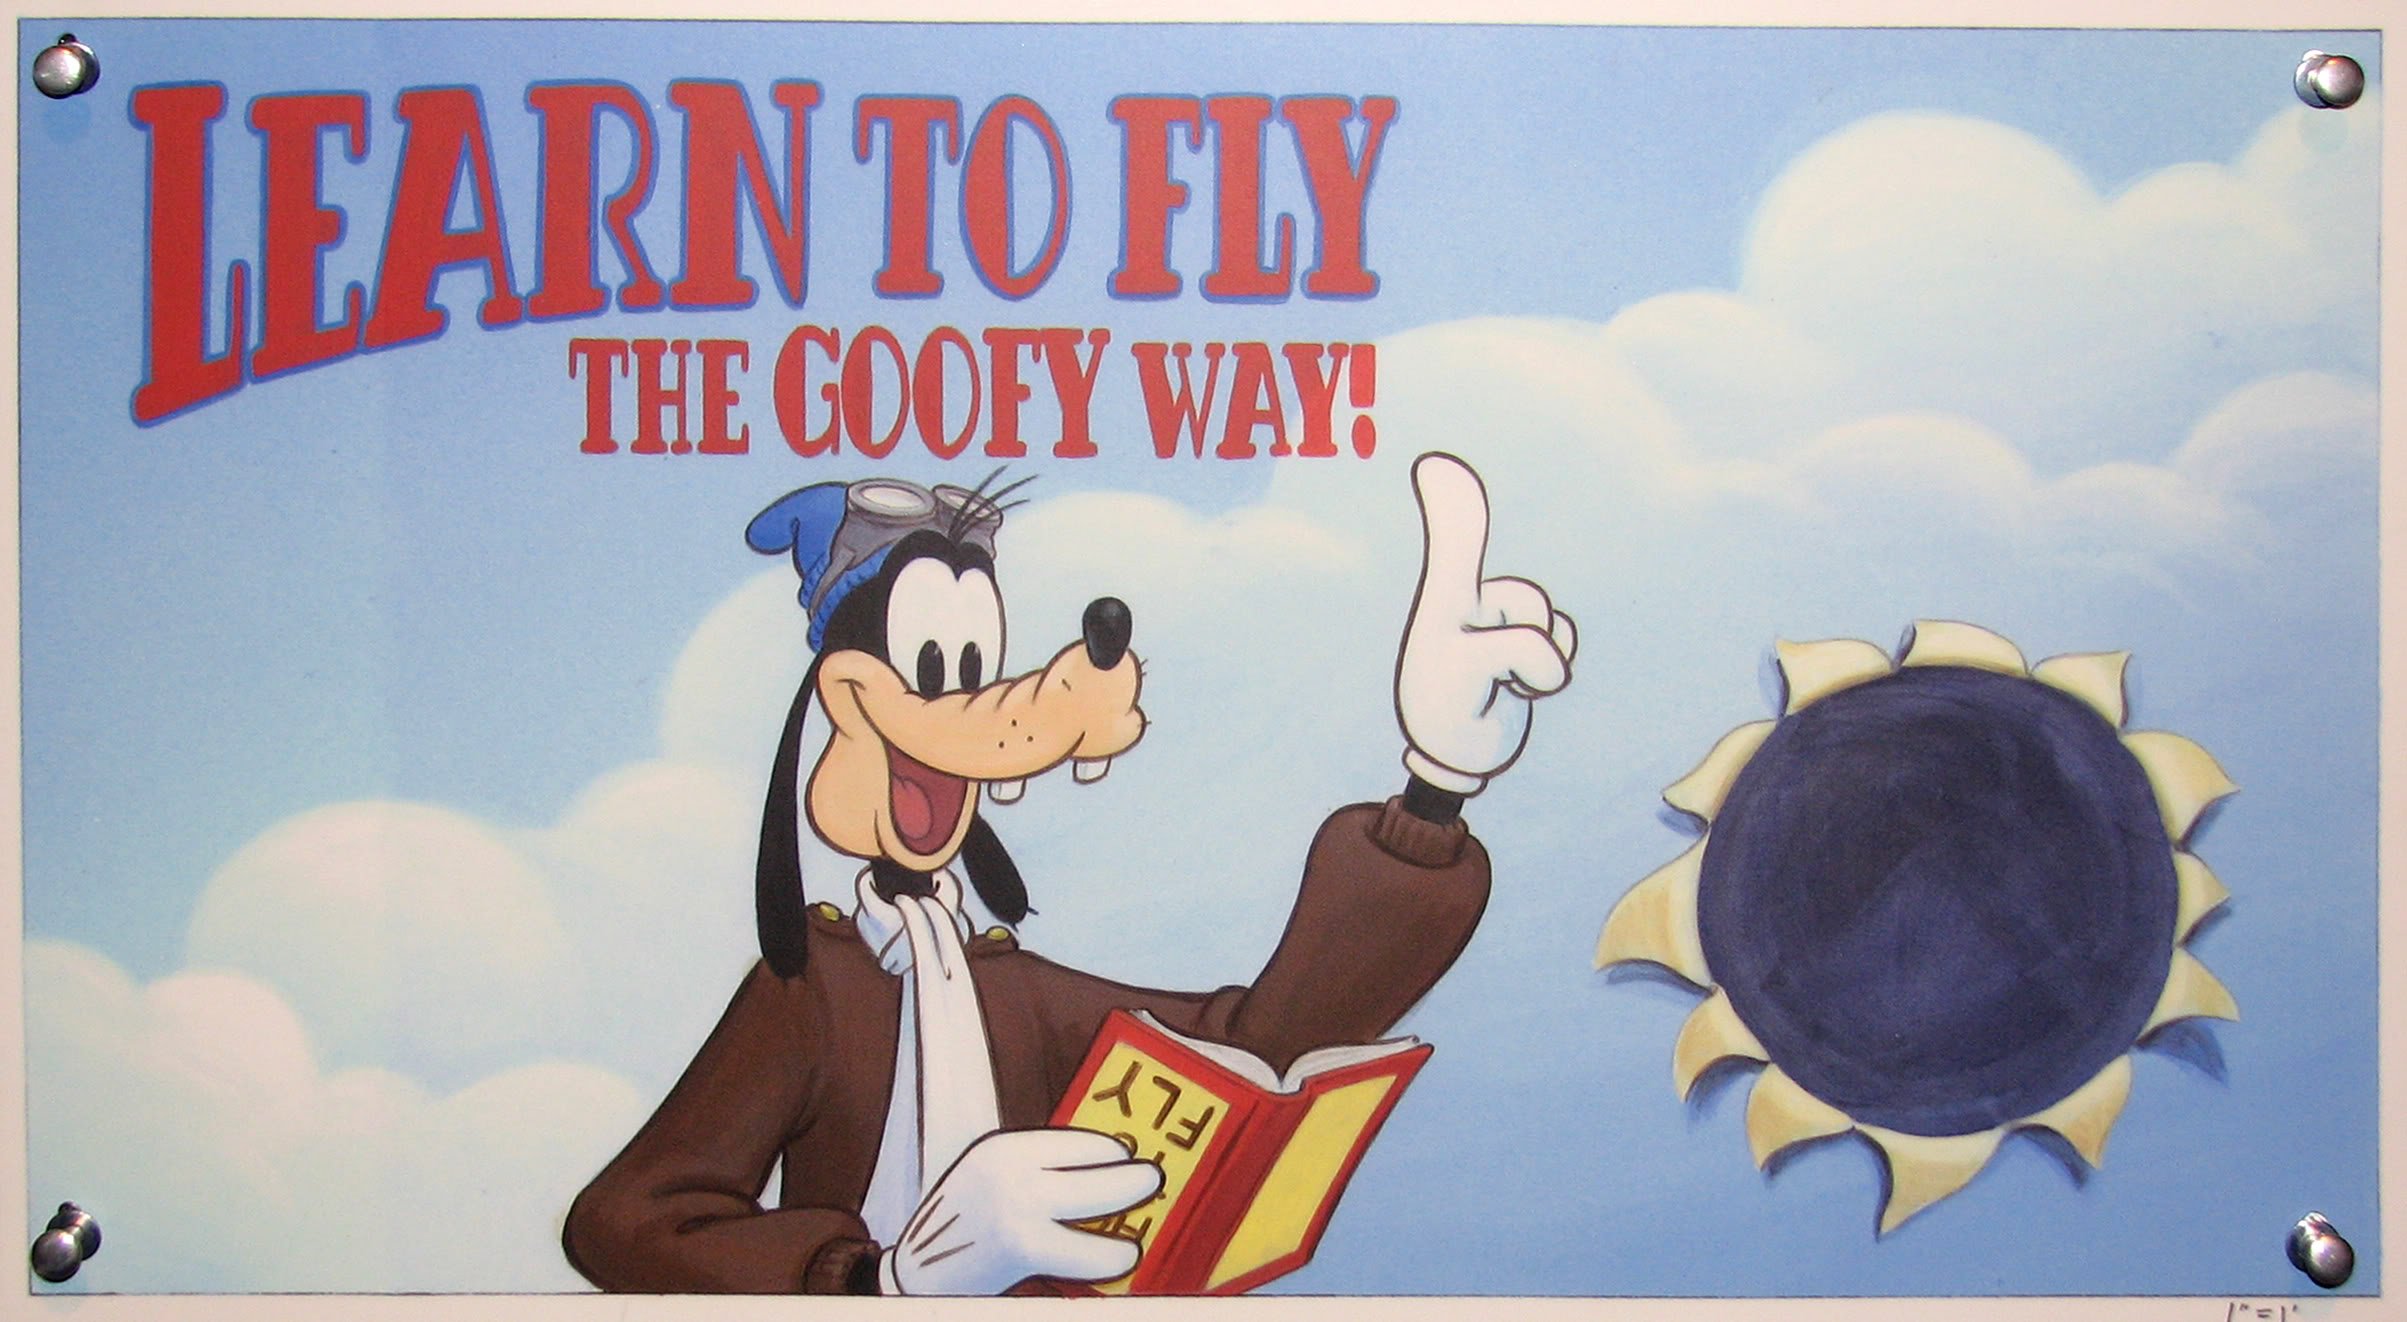 goofy, Disney, Family, Animation, Fantasy, 1goofy, Comedy Wallpaper